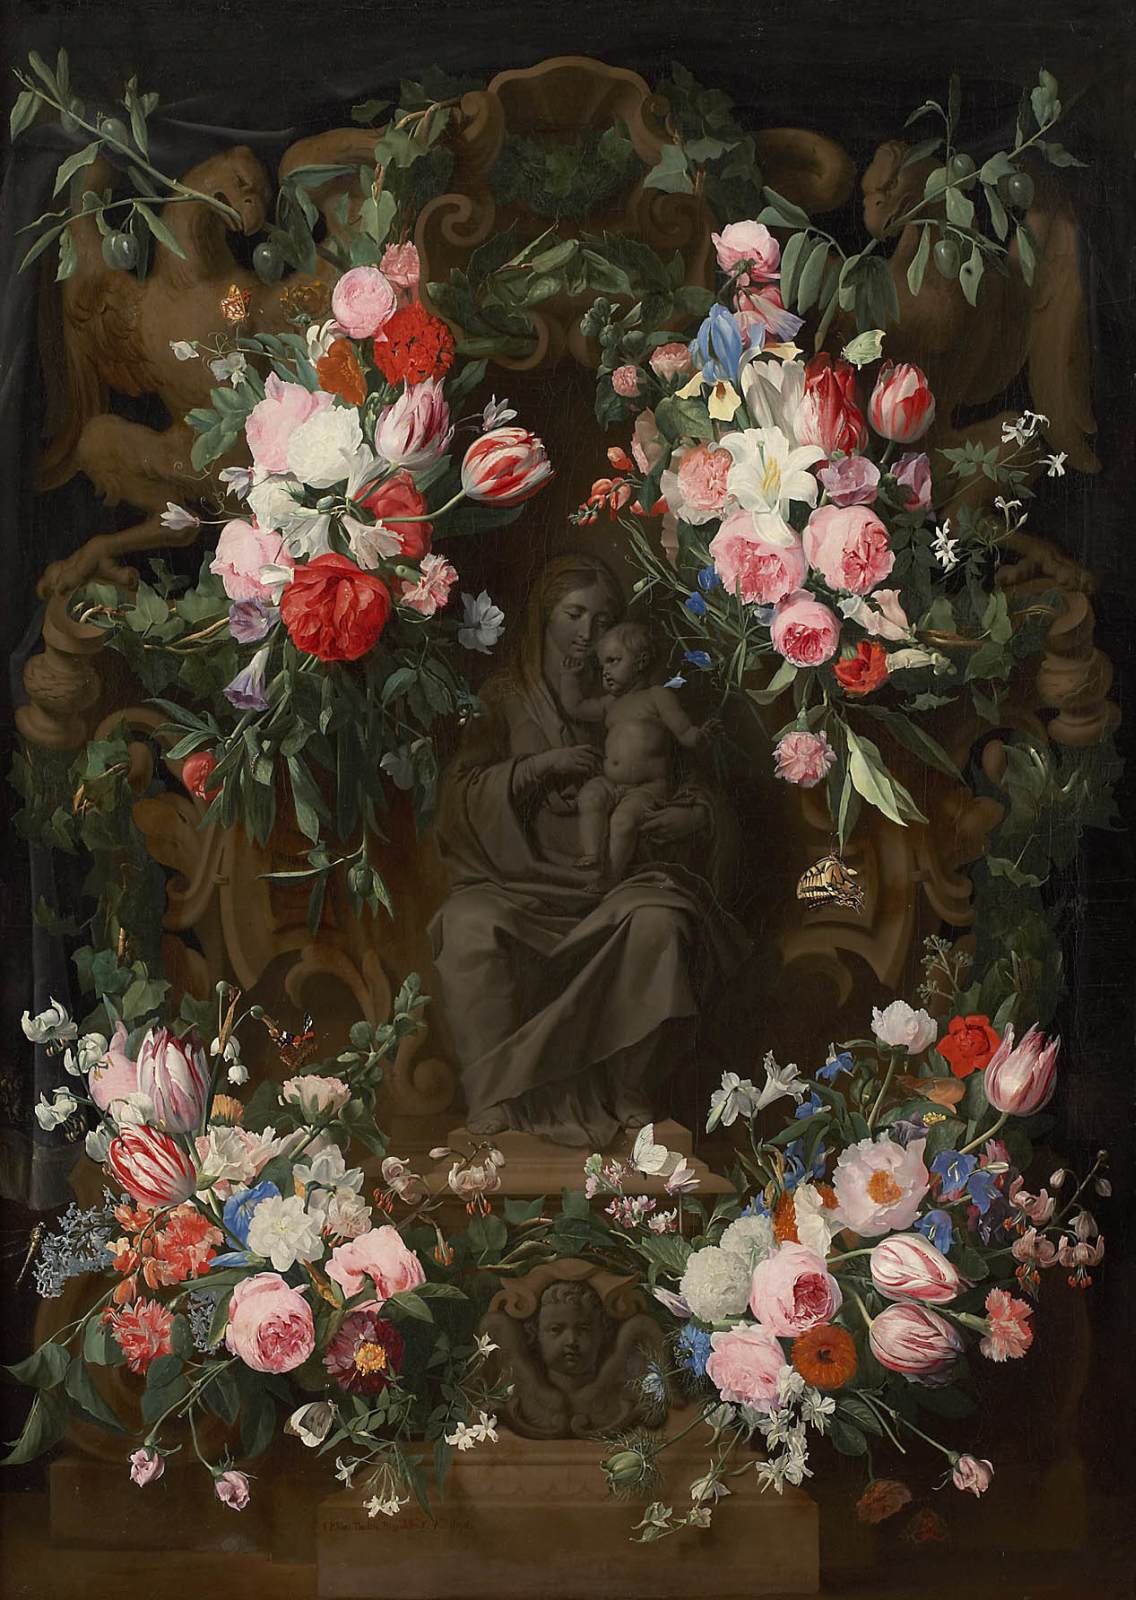 Guirnaldas de Flores que Rodean una La Virgen Sentada